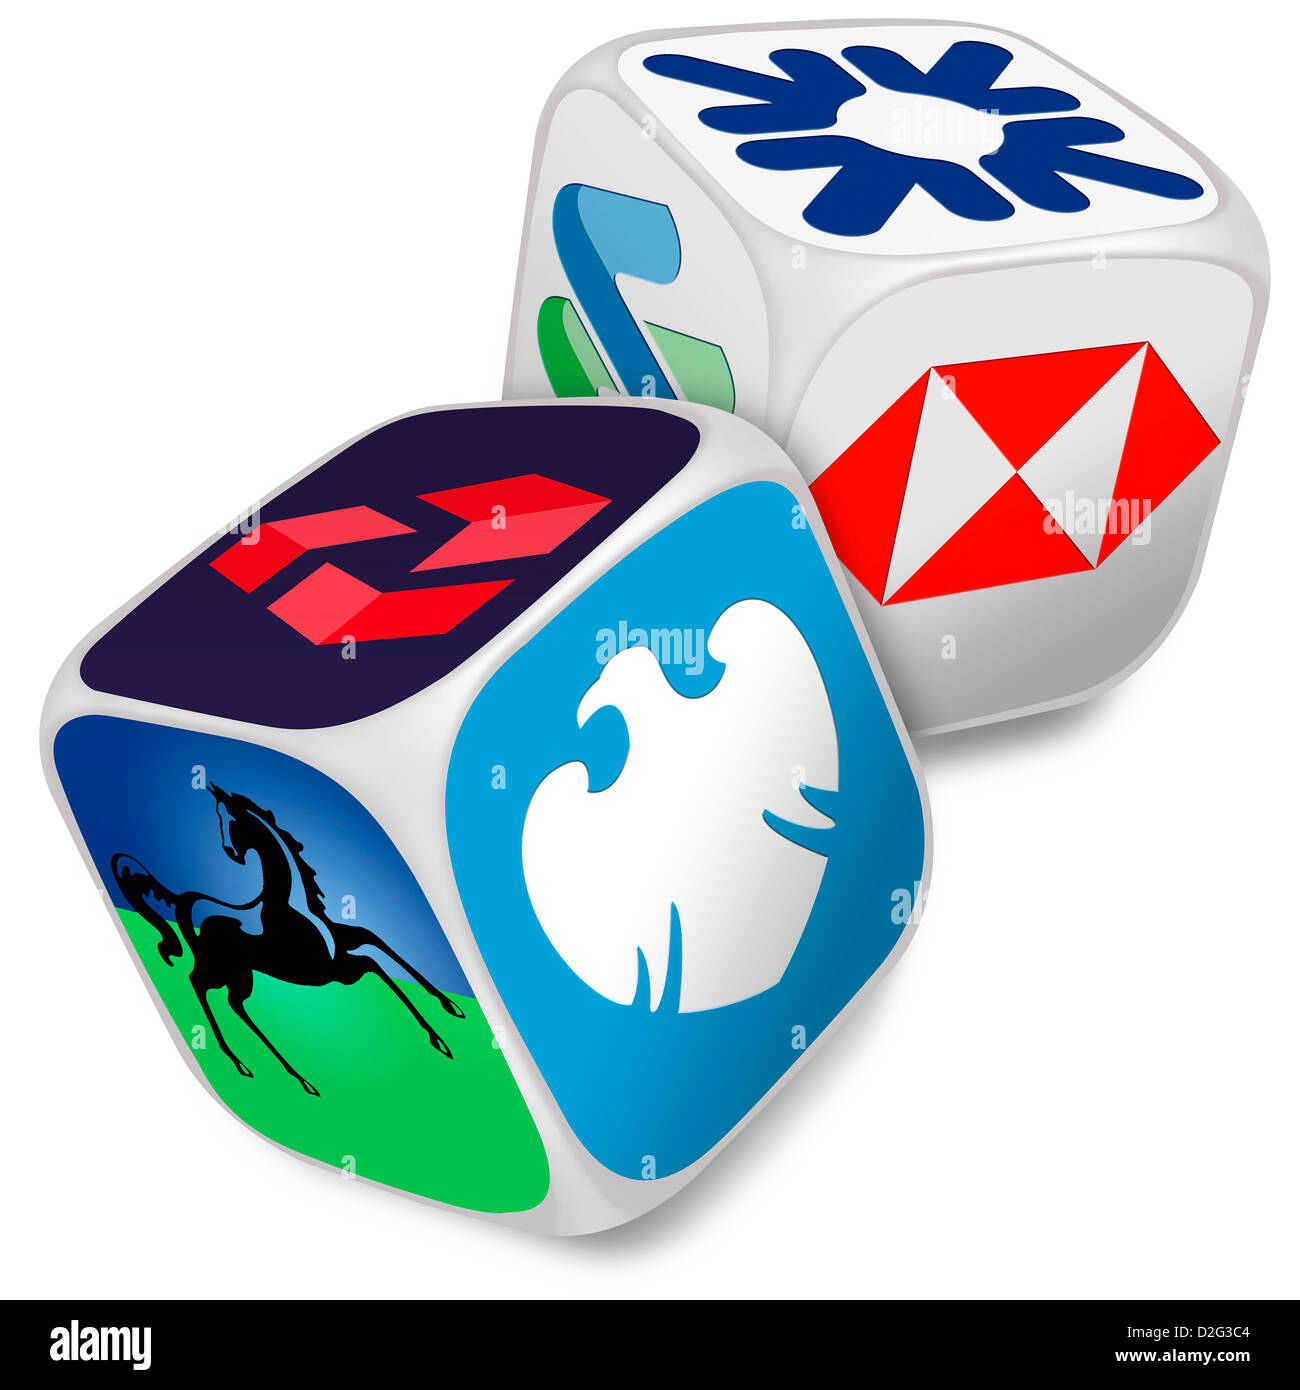 Zwei Würfel mit den Logos der sechs UK Banken auf ihren Gesichtern - Banking / Auswahl / bank / Glücksspiel / Risiko-Konzept Stockfoto